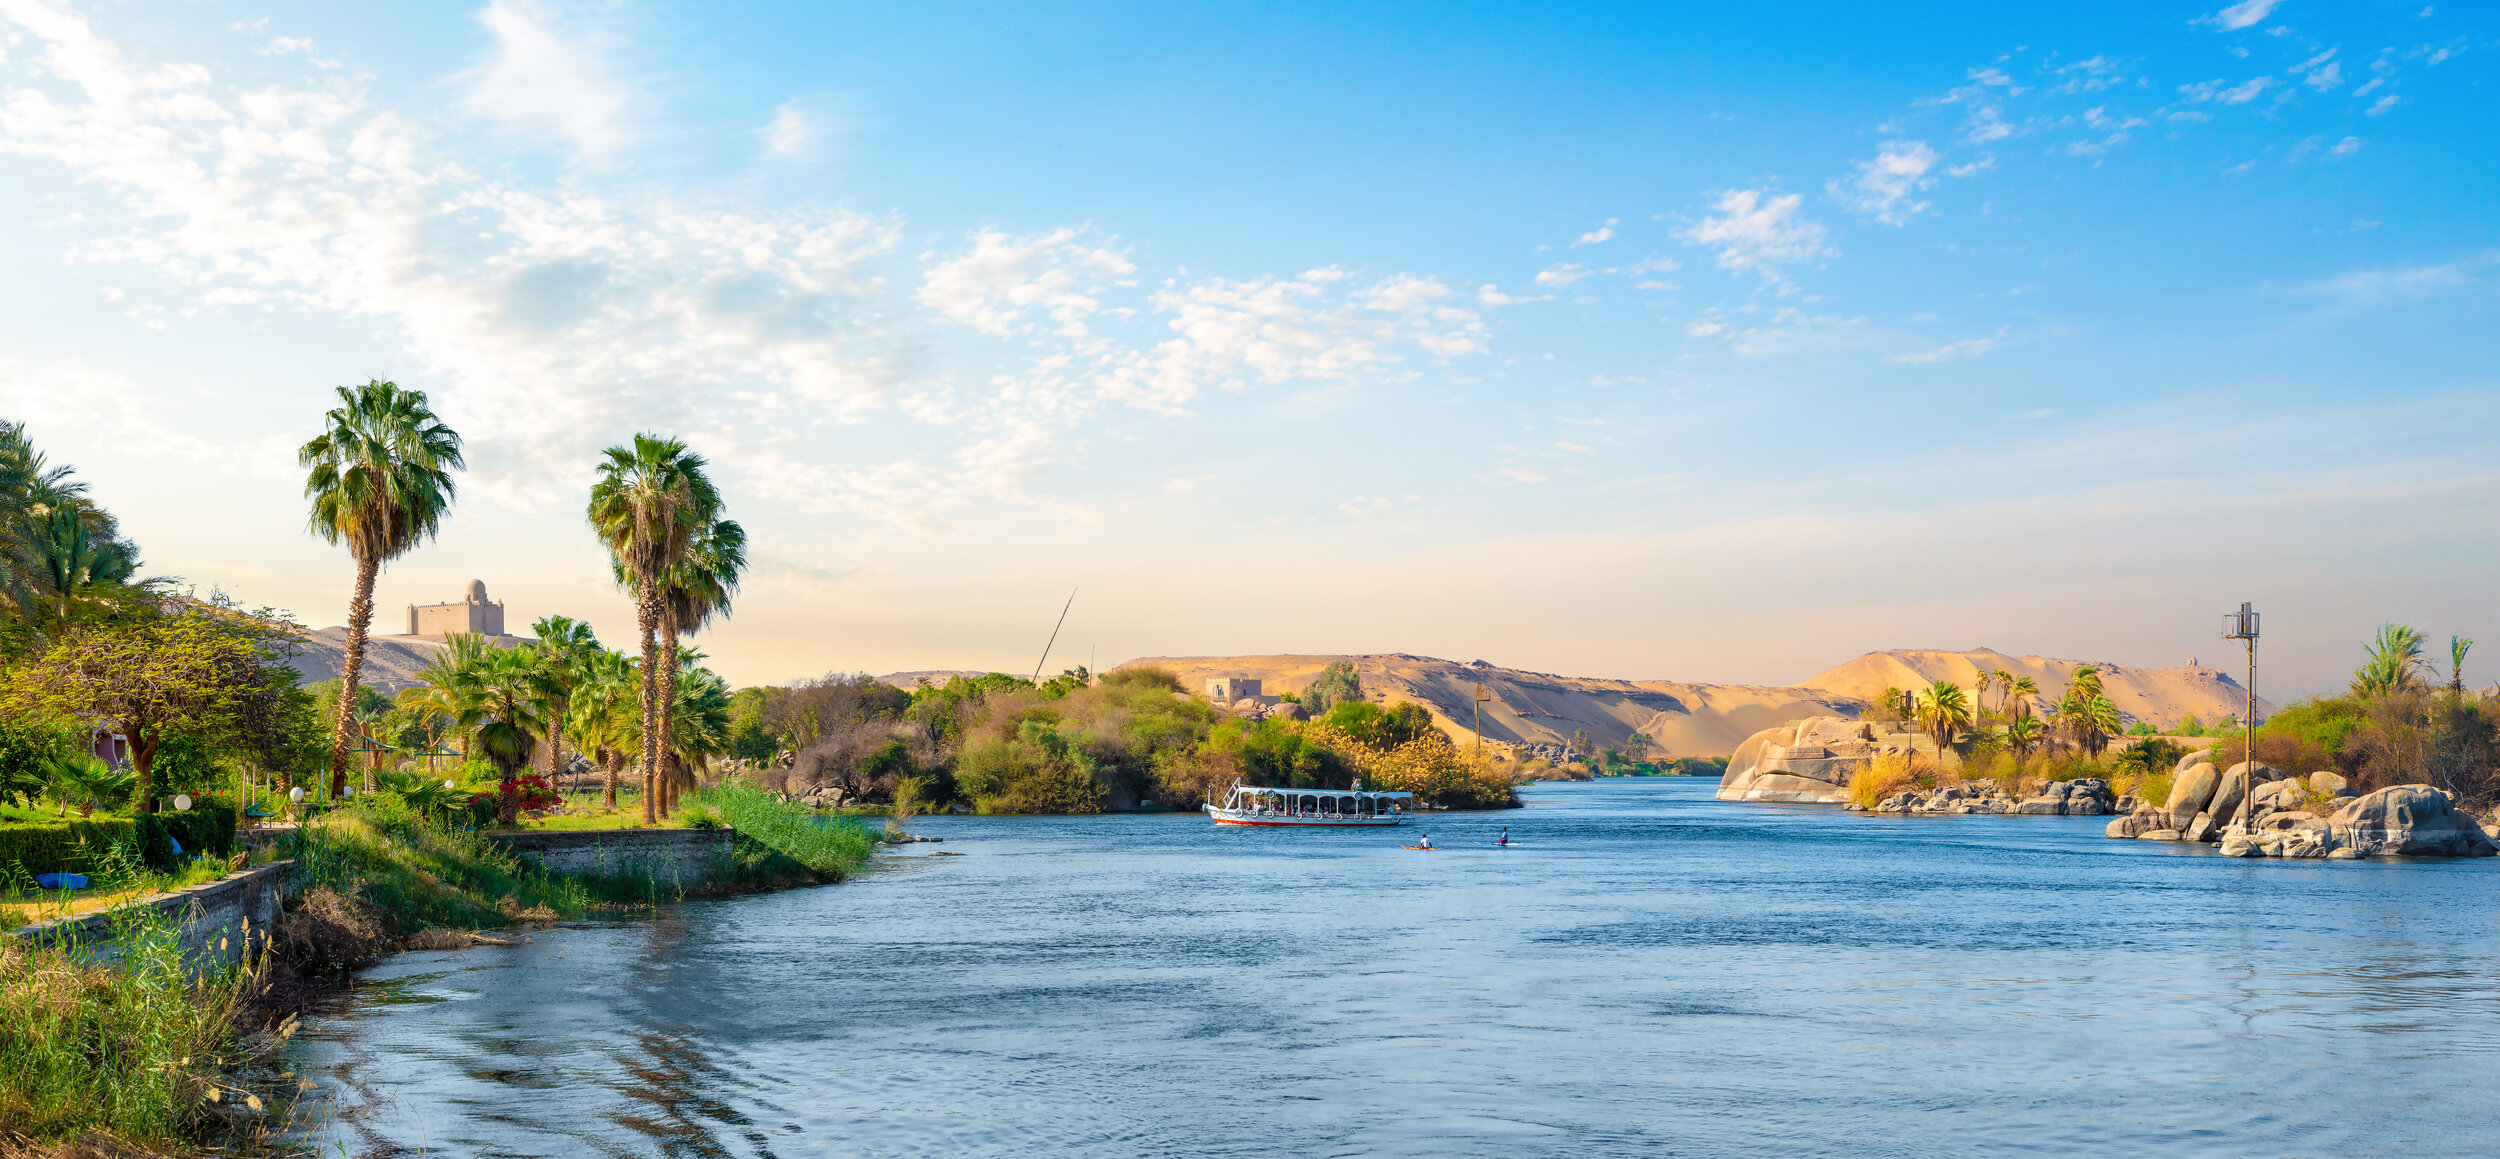 Egypt Nile River.jpeg